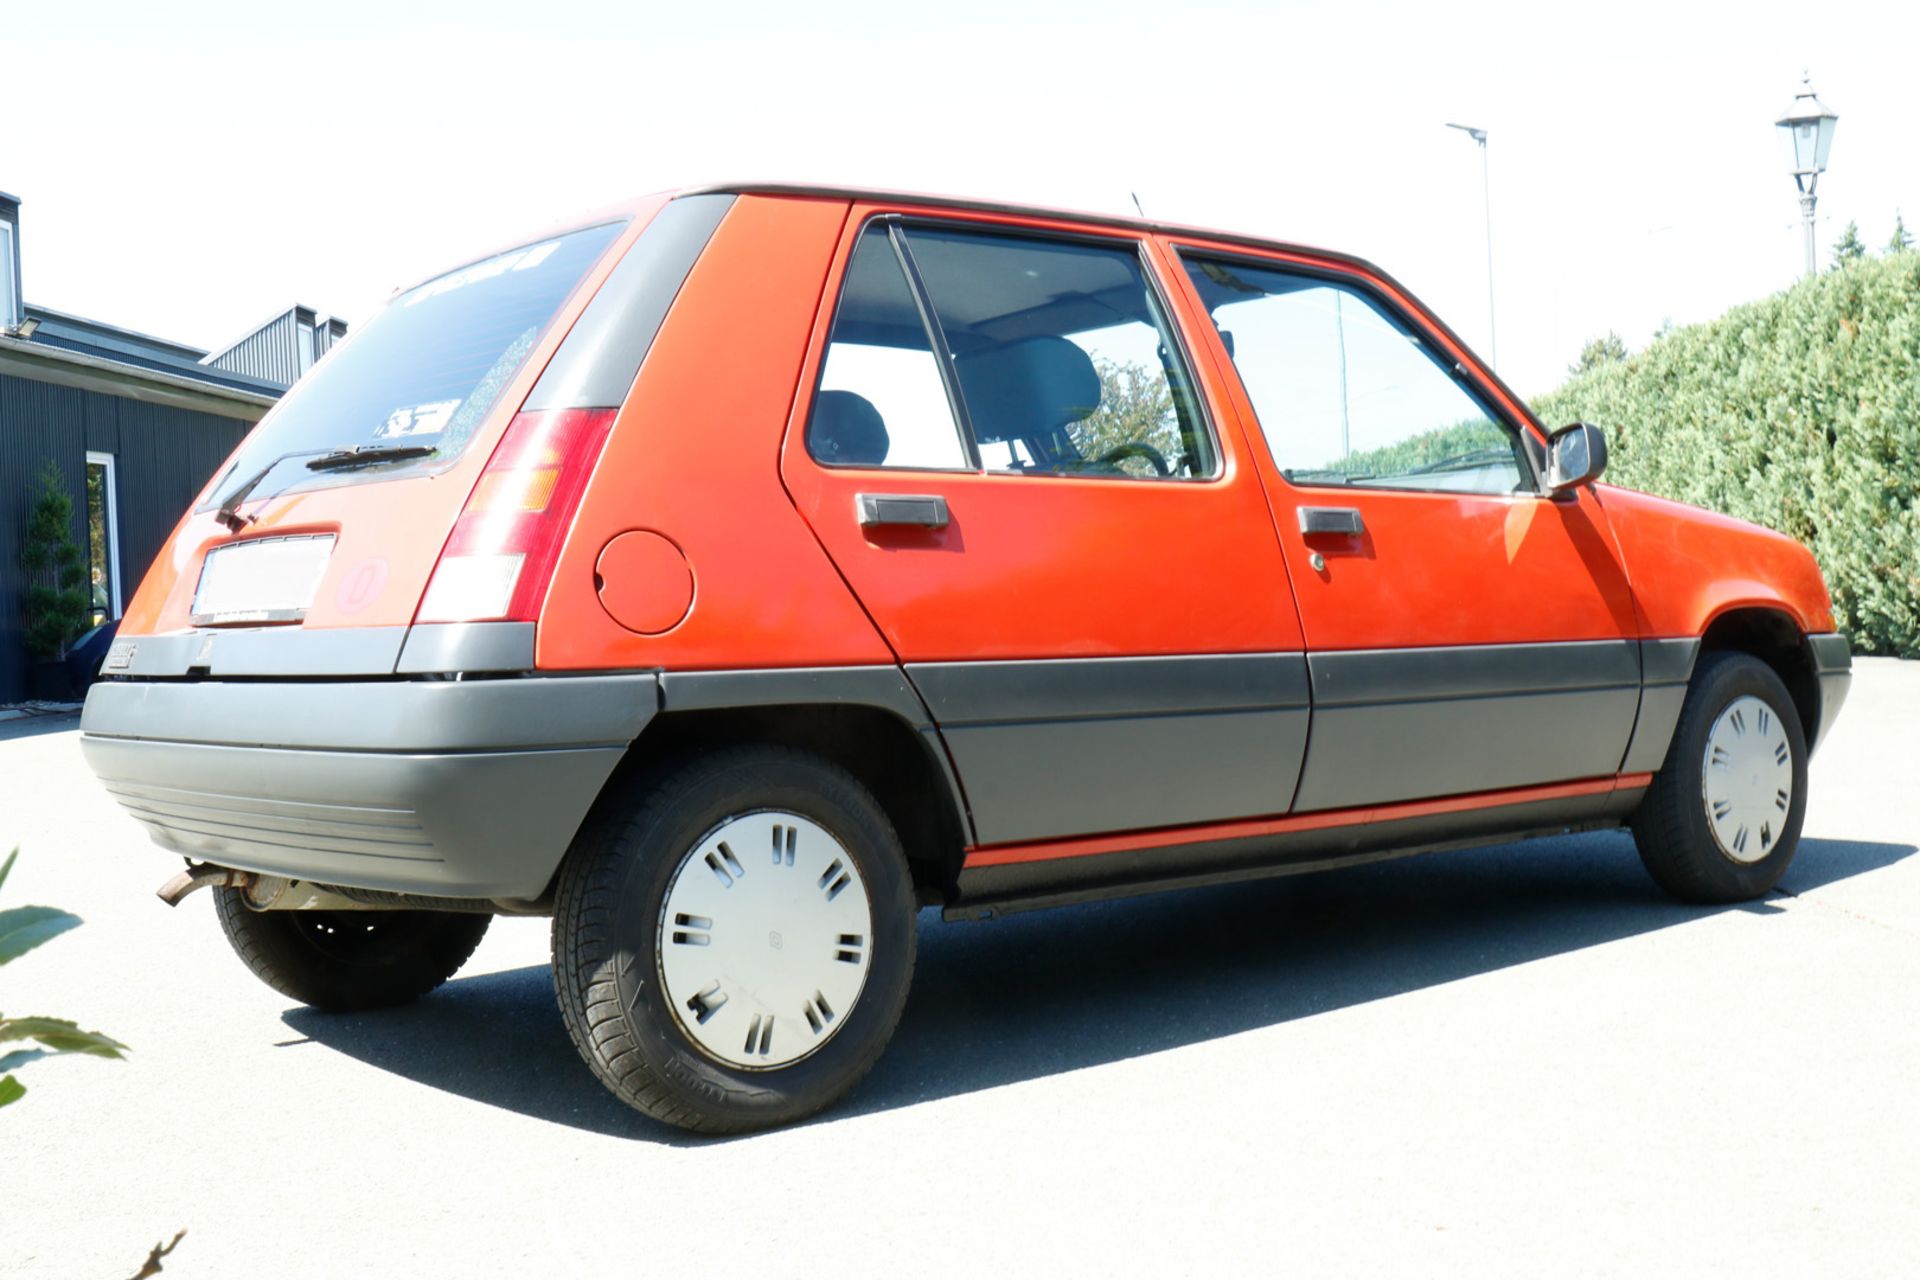 Renault R5, VP1B40 301G05 20581, Bj. 2.4.1986, KW49/5250, 5-Türig, Automatic, Original - Image 13 of 26